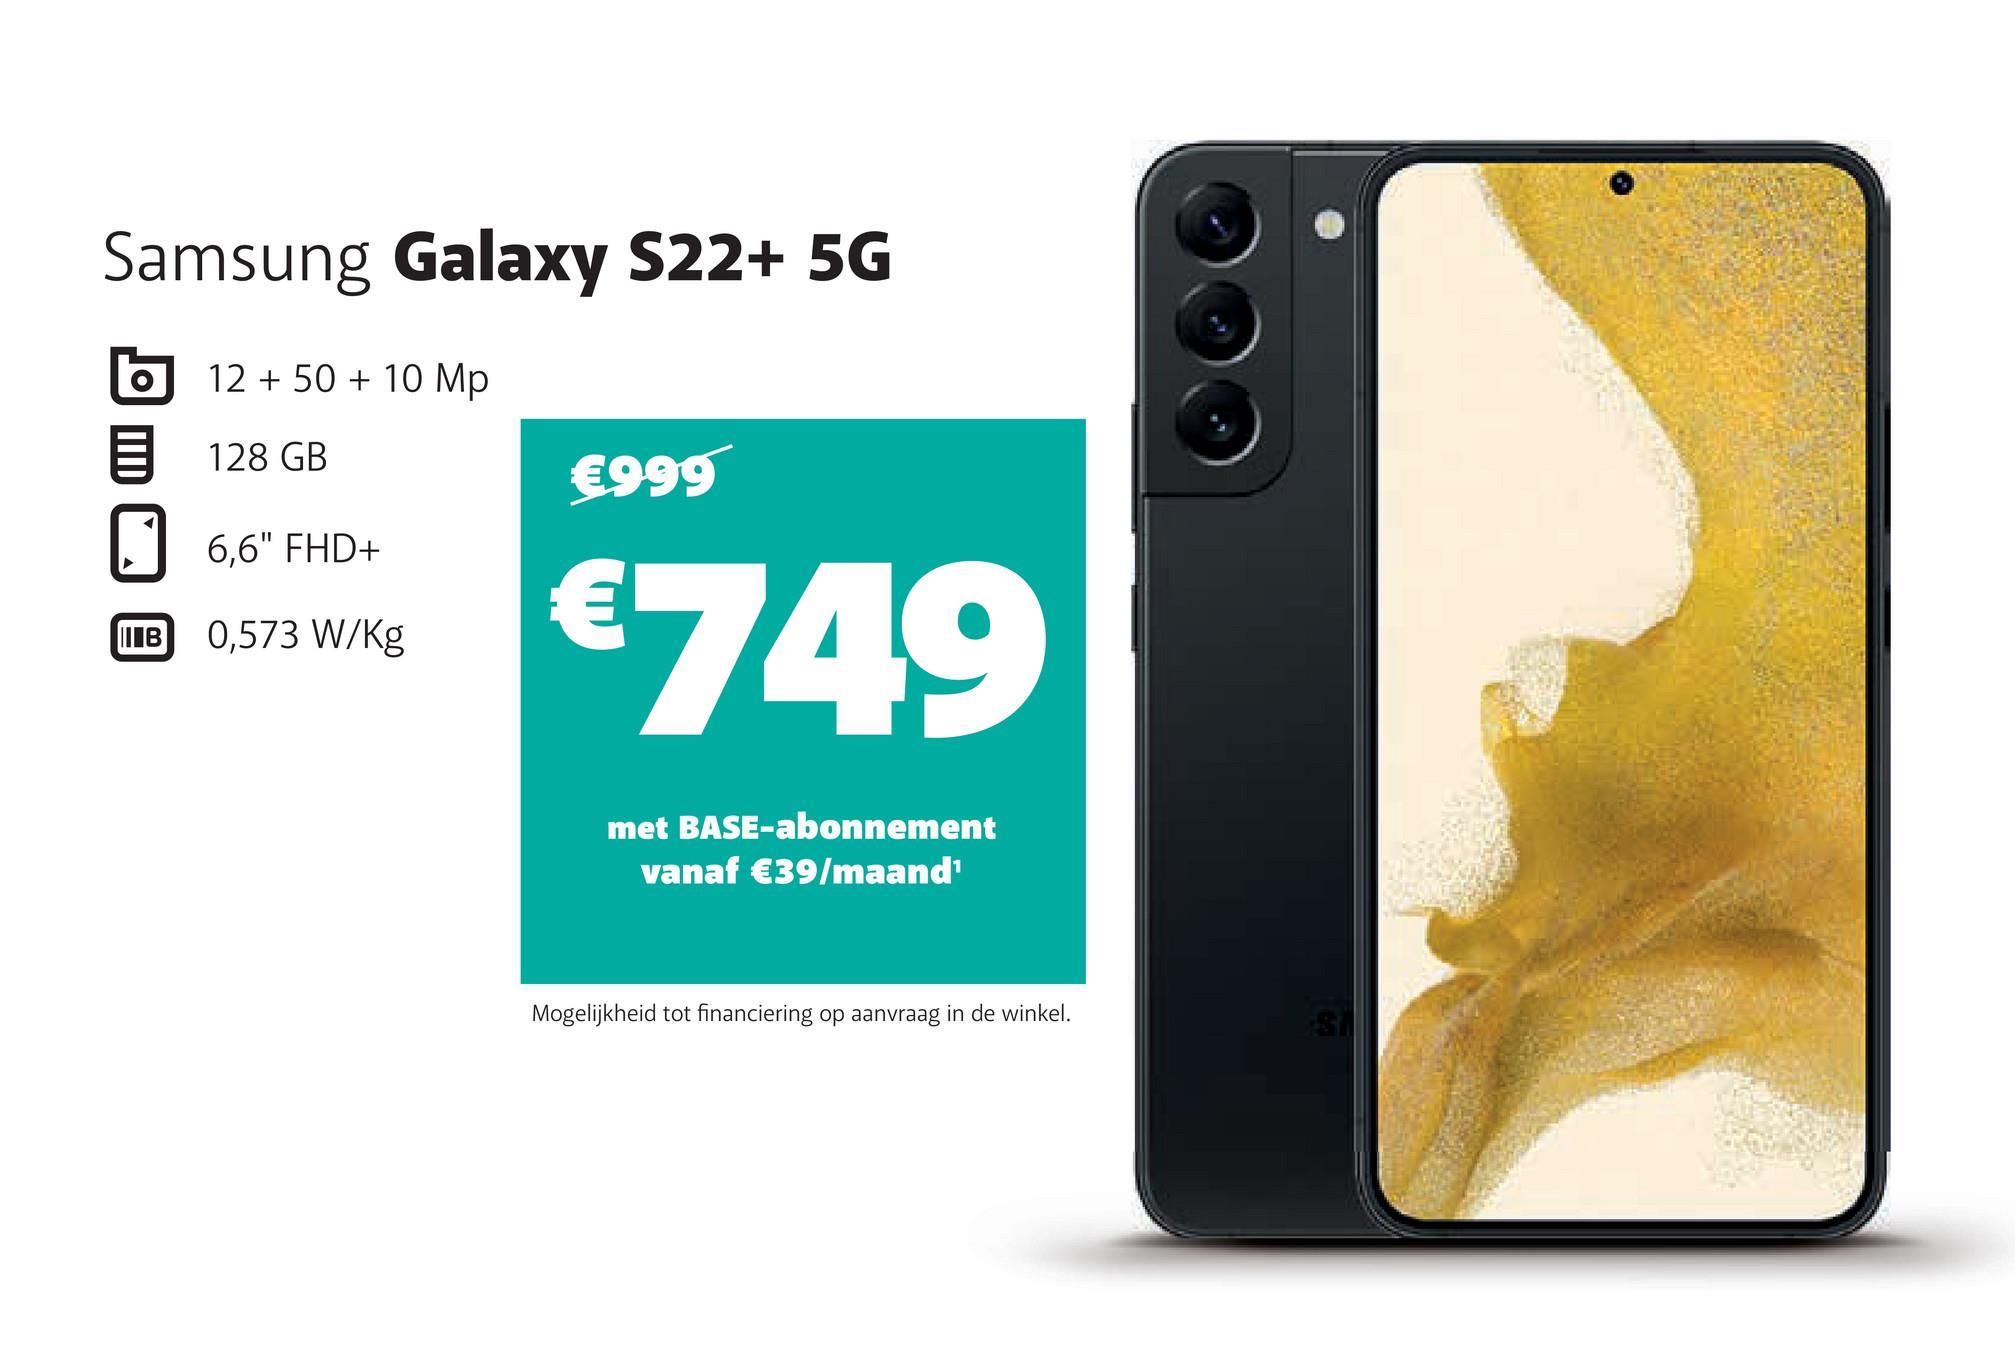 Samsung Galaxy S22+ 5G
12 + 50 + 10 Mp
128 GB
6,6" FHD+
B 0,573 W/kg
O
€999
€749
met BASE-abonnement
vanaf €39/maand¹
Mogelijkheid tot financiering op aanvraag in de winkel.